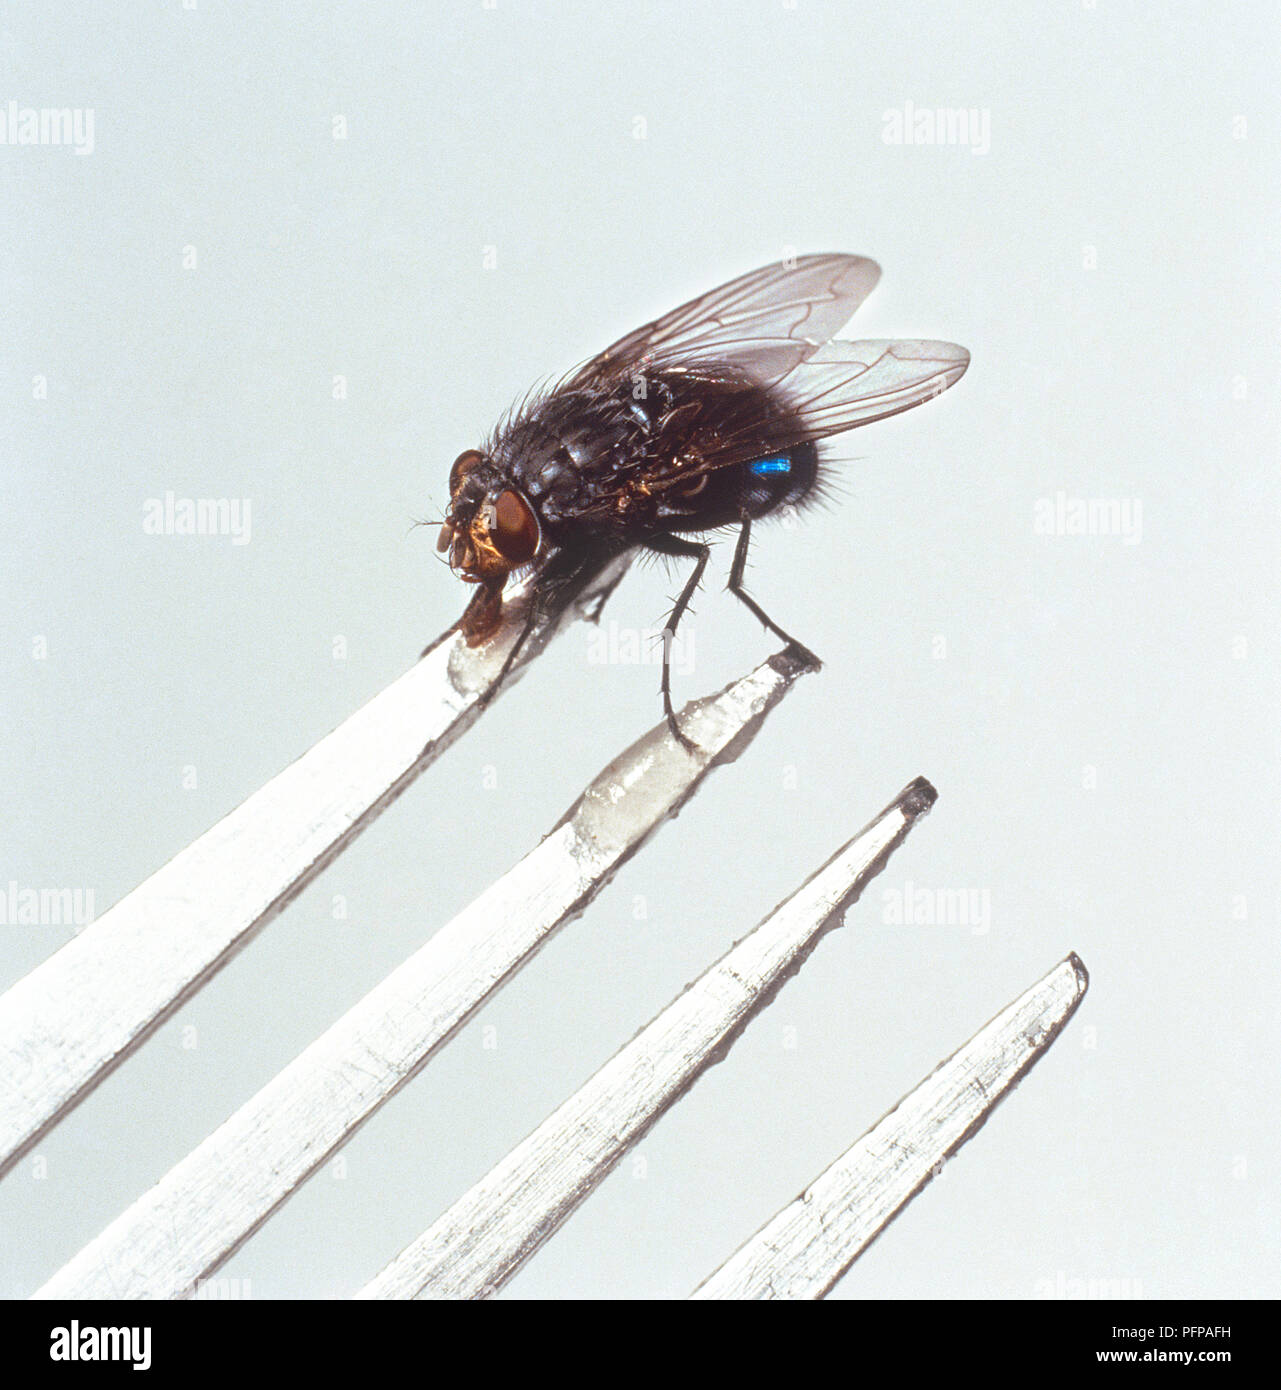 Bluebottle fly (Calliphora vomitoria) mangiare cibo da elemento a rebbio della forcella, close-up Foto Stock